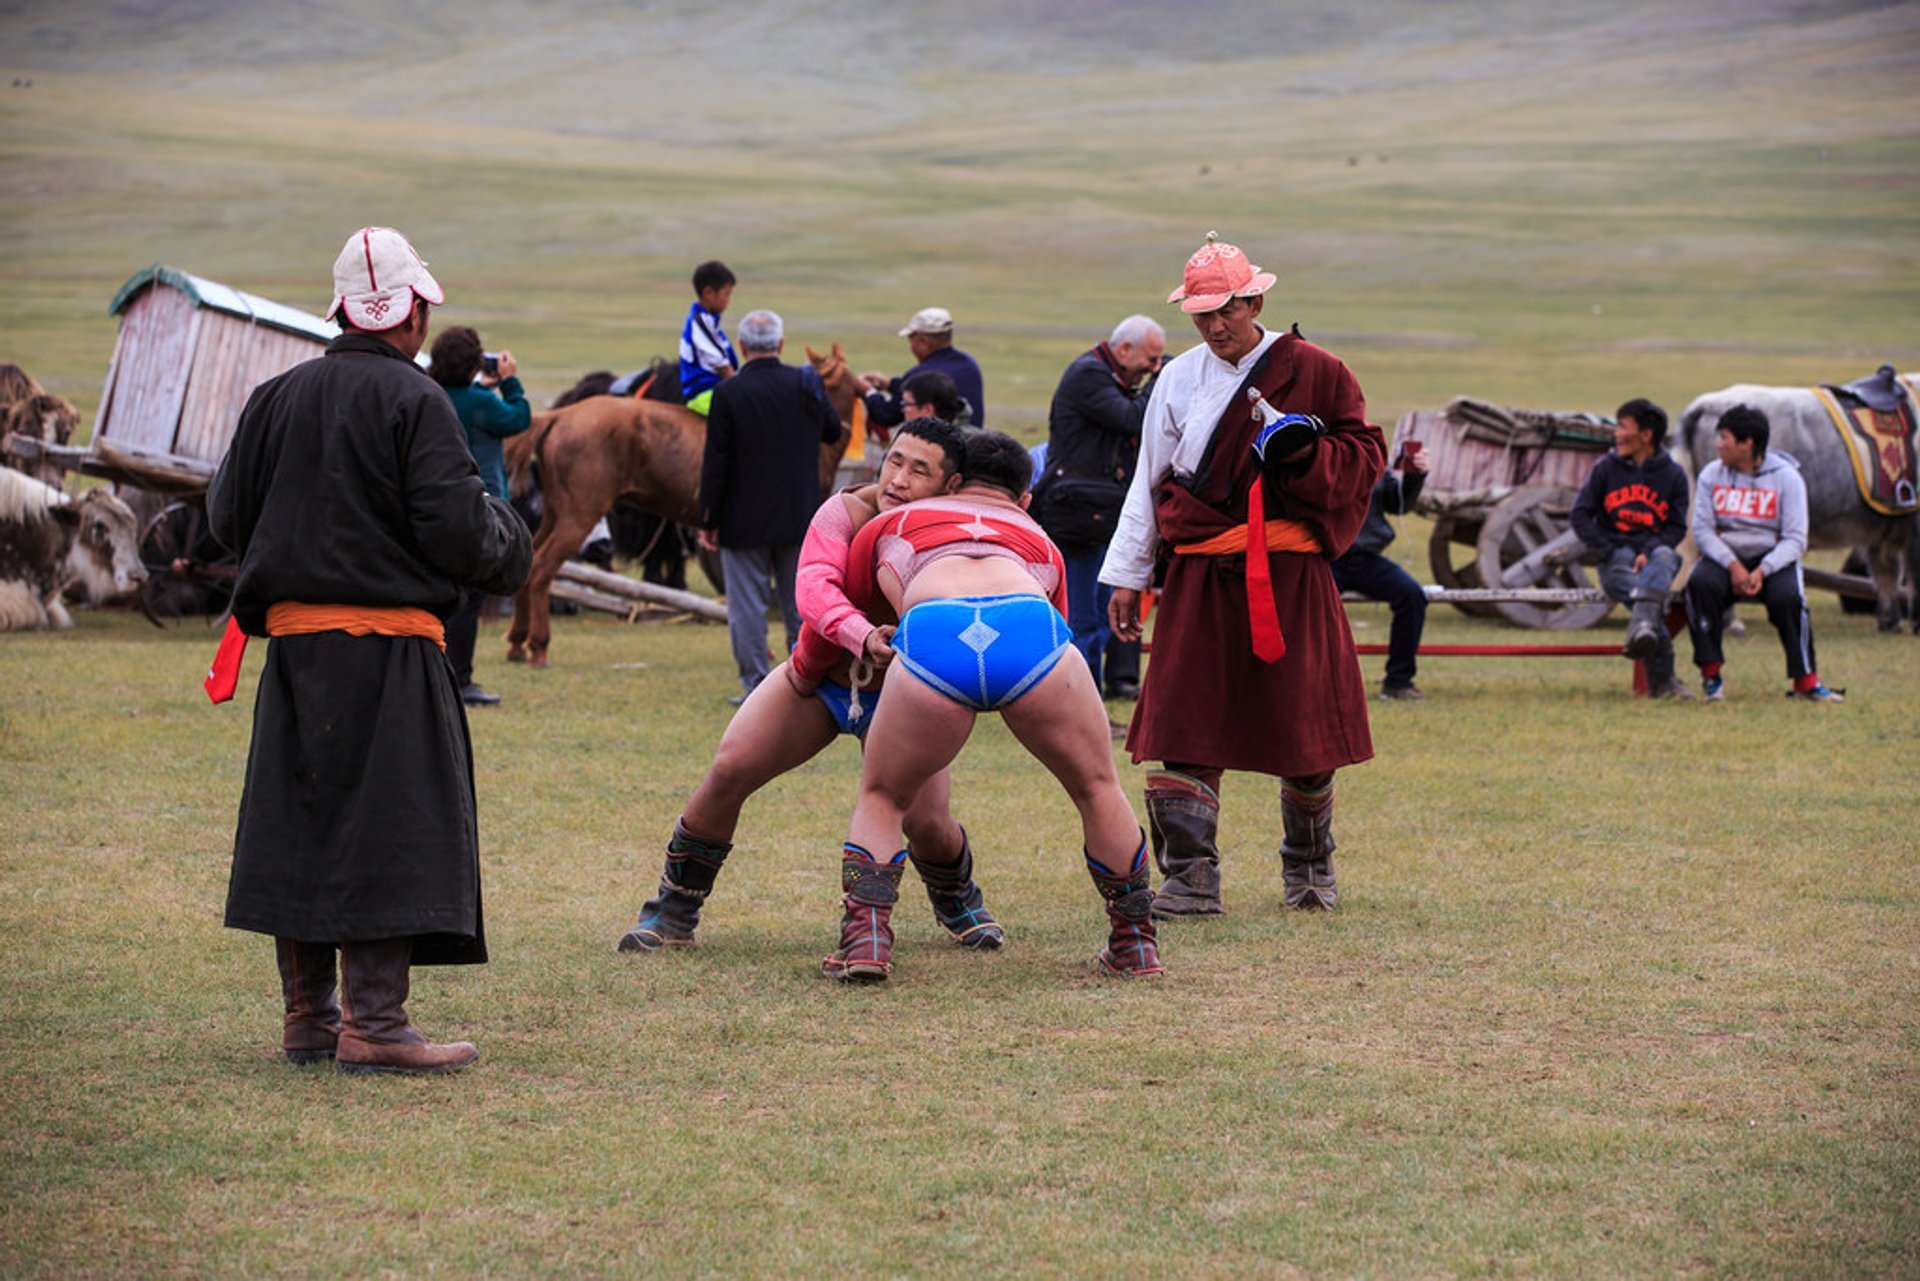 Wrestling mongolo (Bökh) 